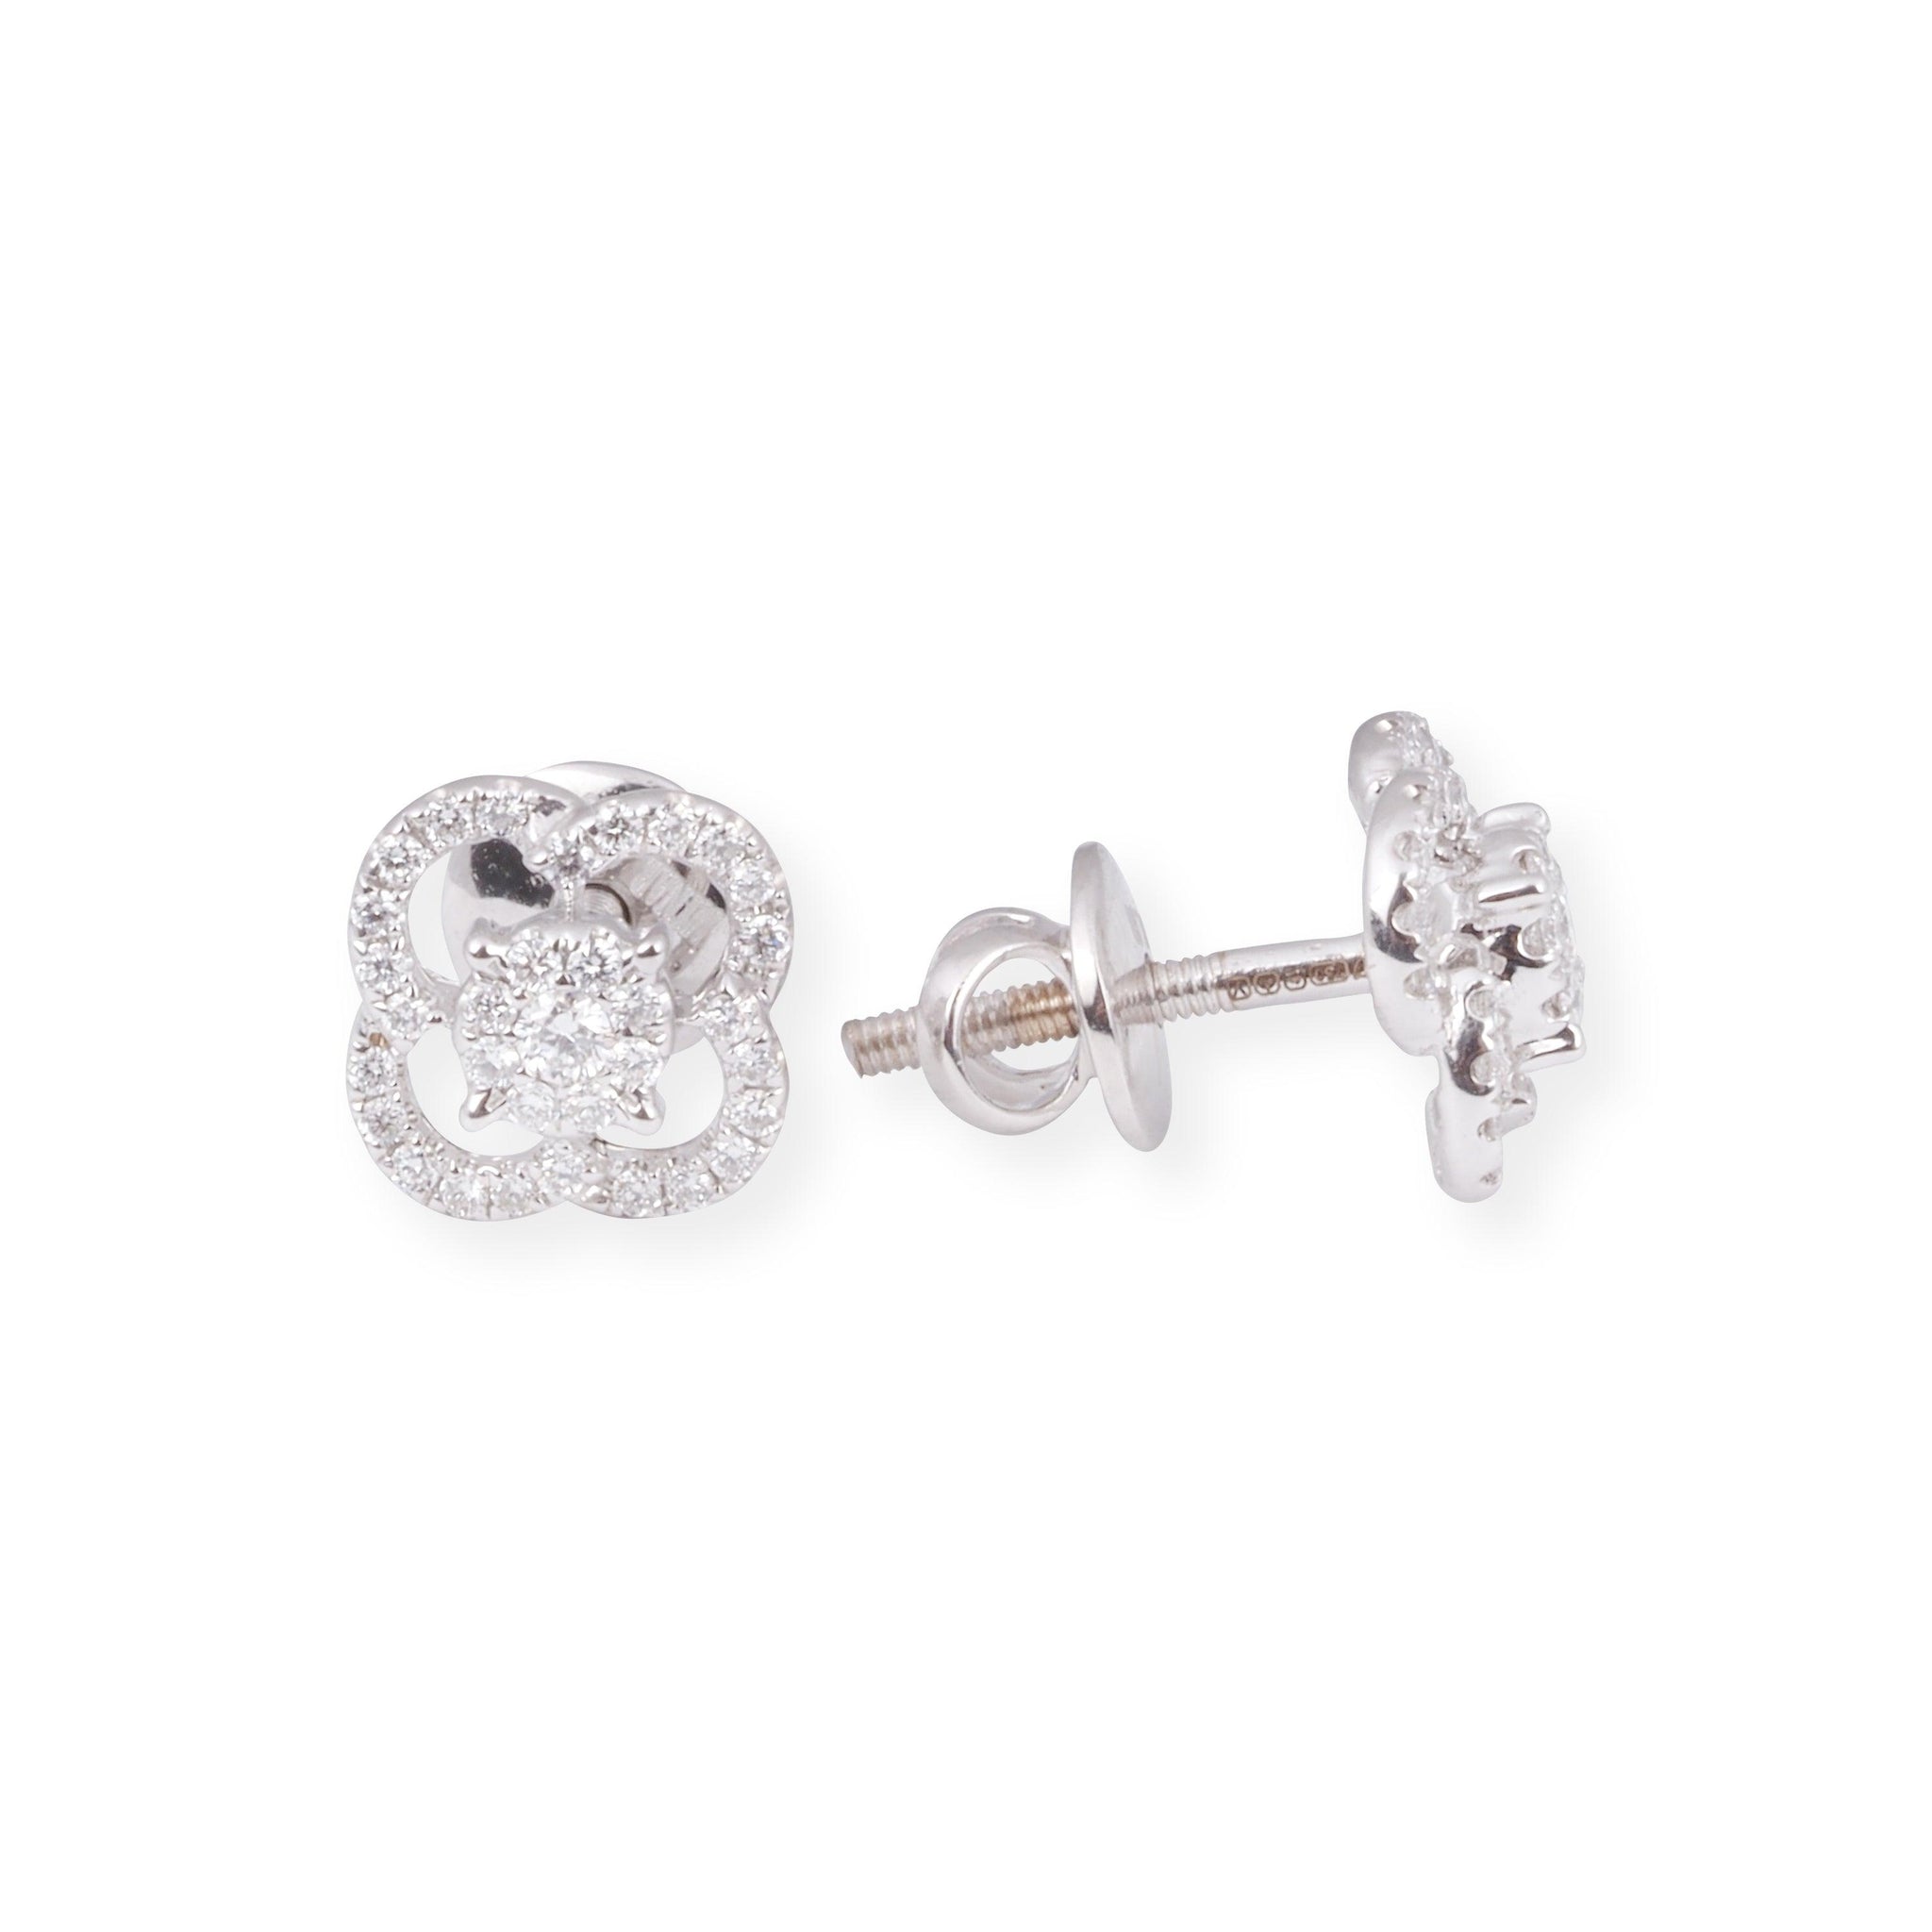 18ct White Gold Diamond Set in Clover Design (Pendant + Chain + Earrings) MCS6878/9